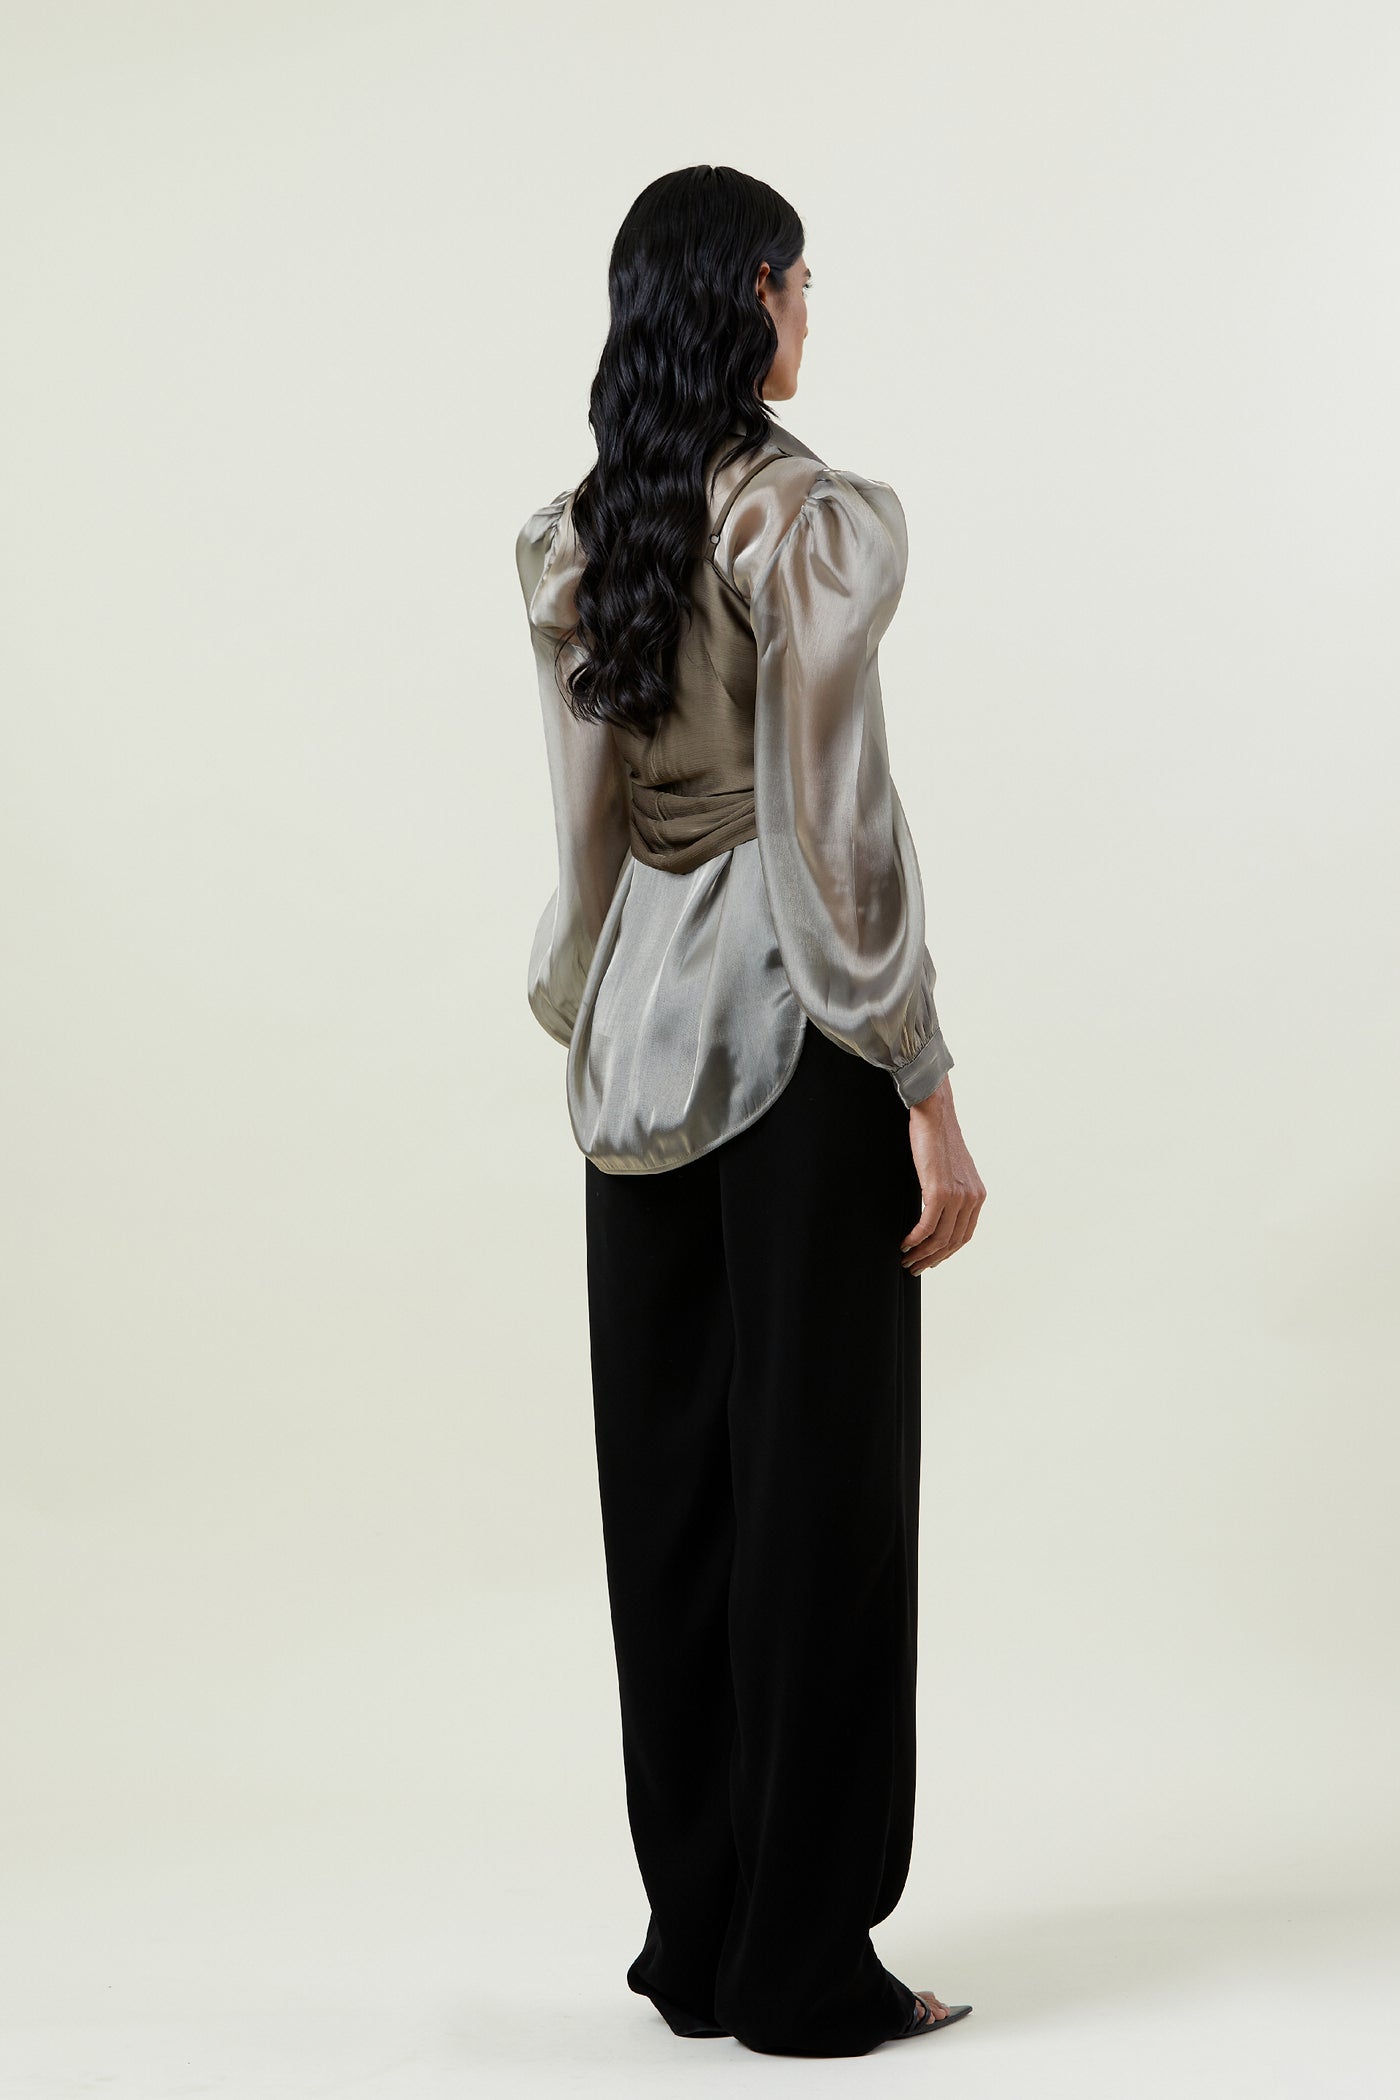 Kanika Goyal Label Scarf Tie Up Top indian designer wear online shopping melange singapore